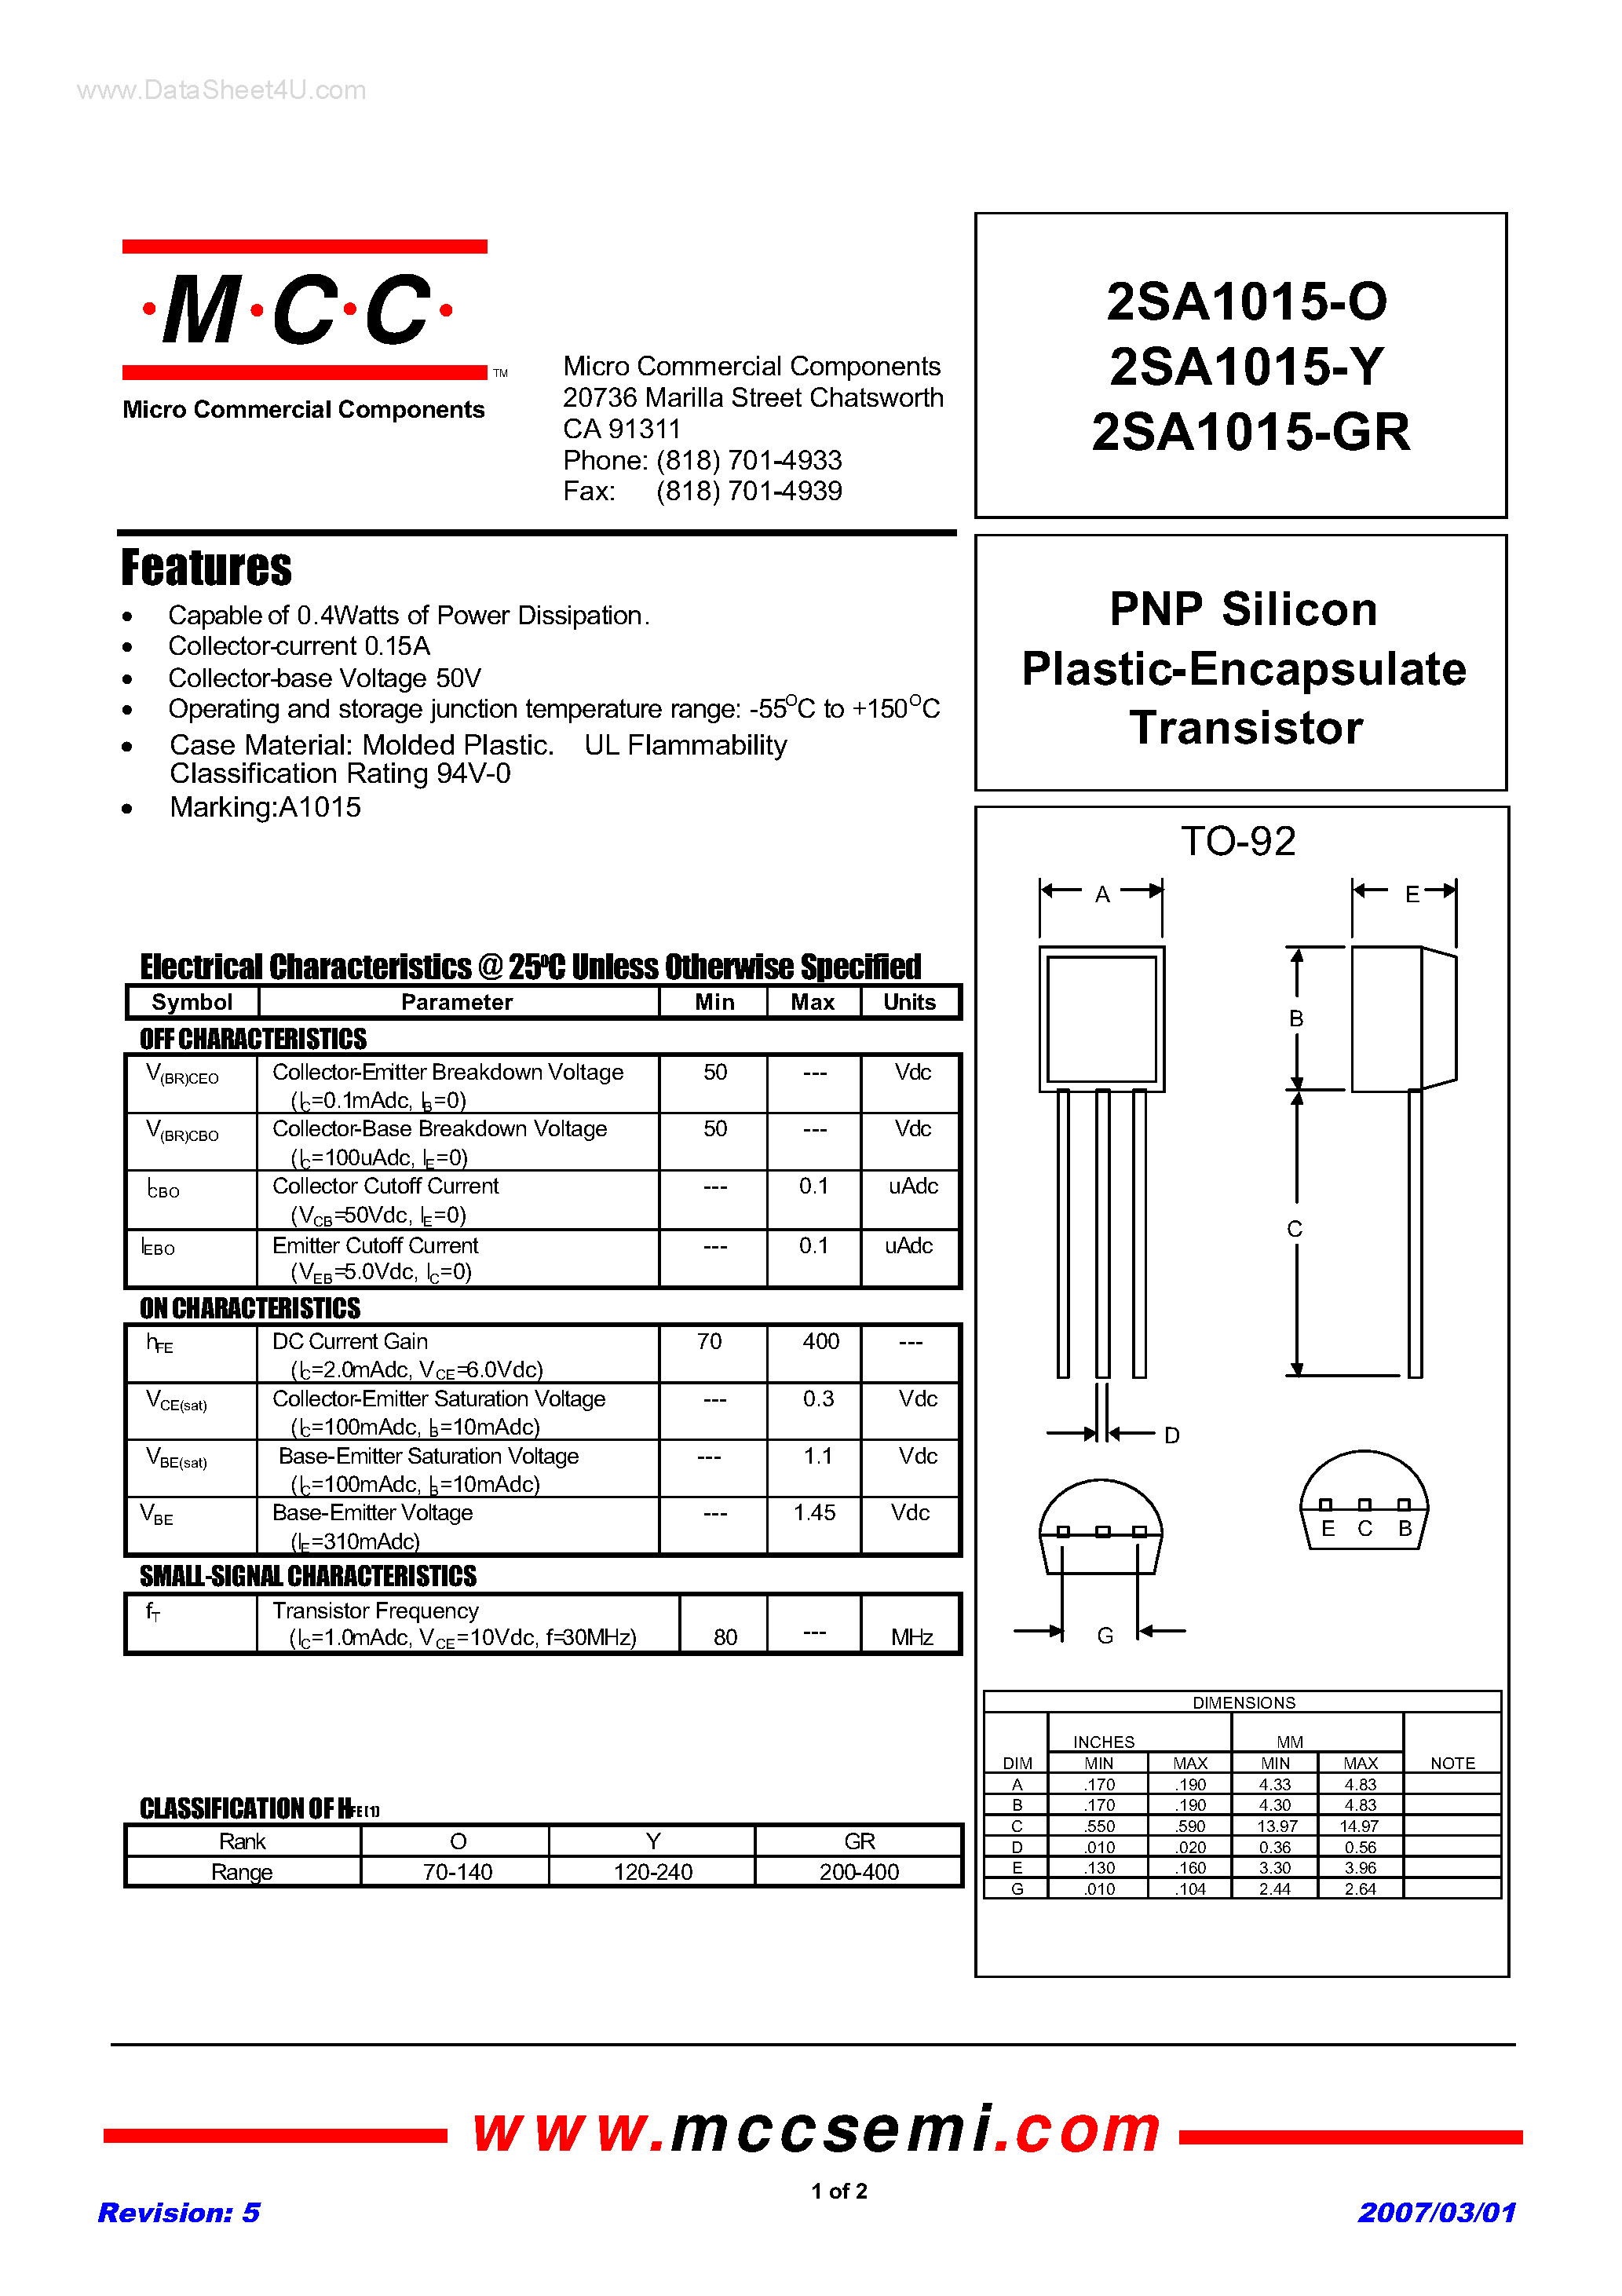 Datasheet 2SA1015-GR - (2SA1015-xx) PNP Silicon Plastic-Encapsulate Transistor page 1